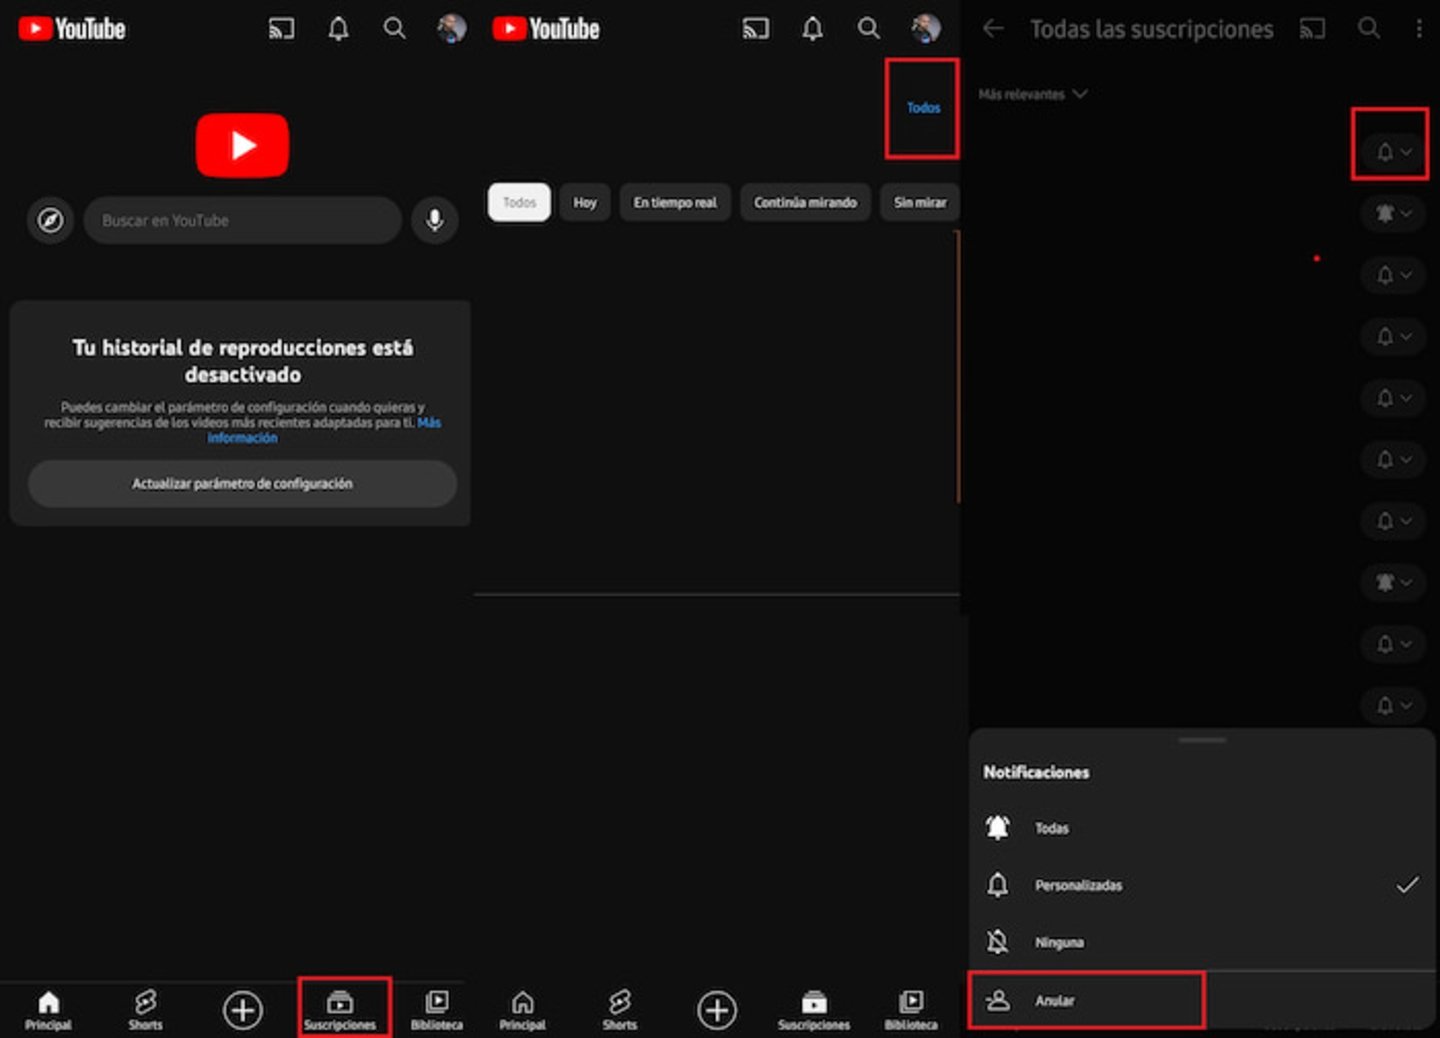 Si usas YouTube desde la app móvil, también puedes eliminar las suscripciones de forma sencilla